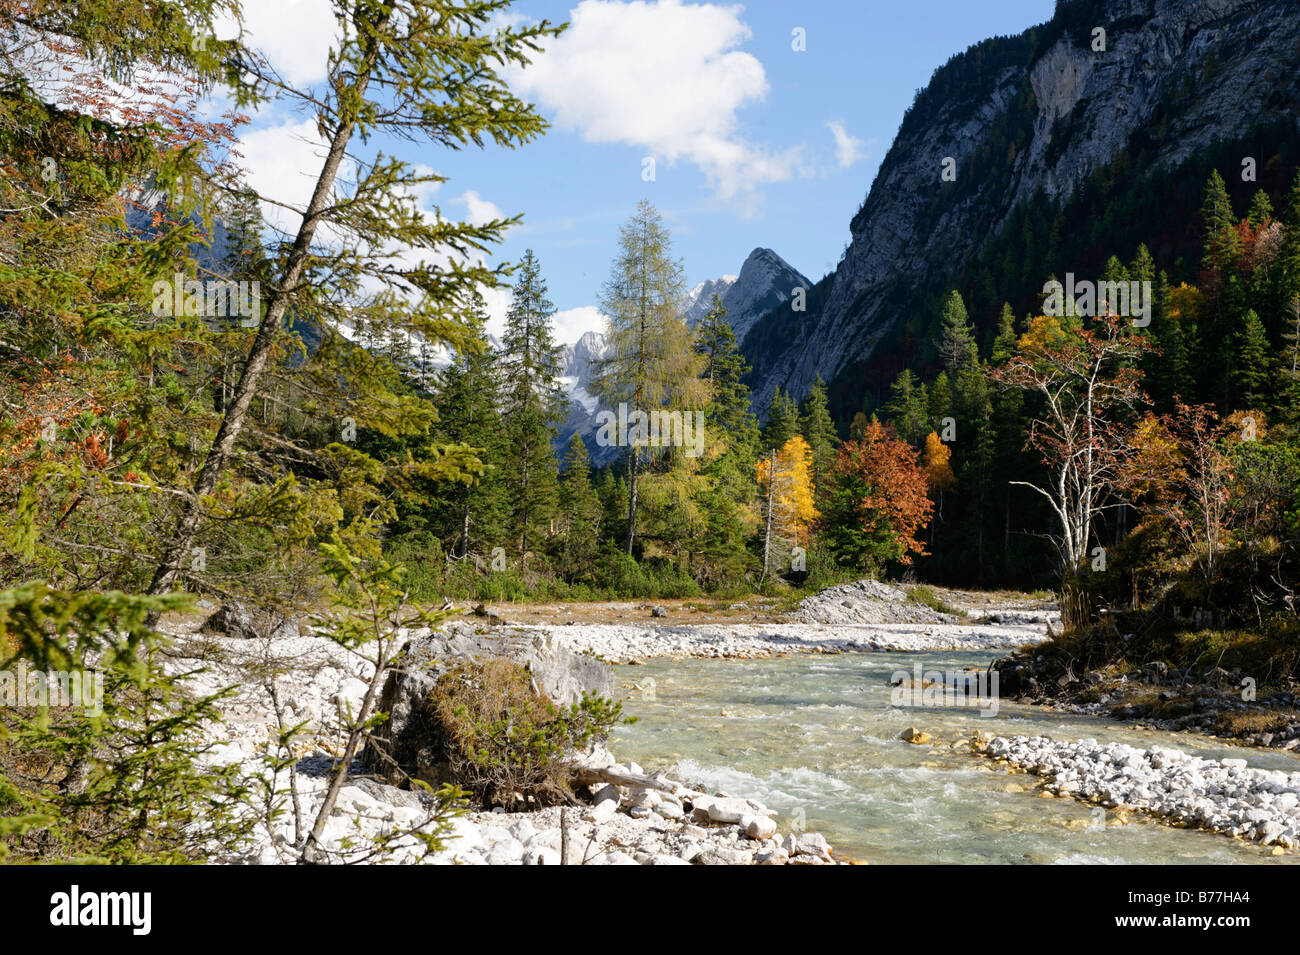 La rivière Isar dans la vallée Hinterautal, origine de la rivière Isar, près de Seefeld, Tyrol, Autriche, Europe Banque D'Images